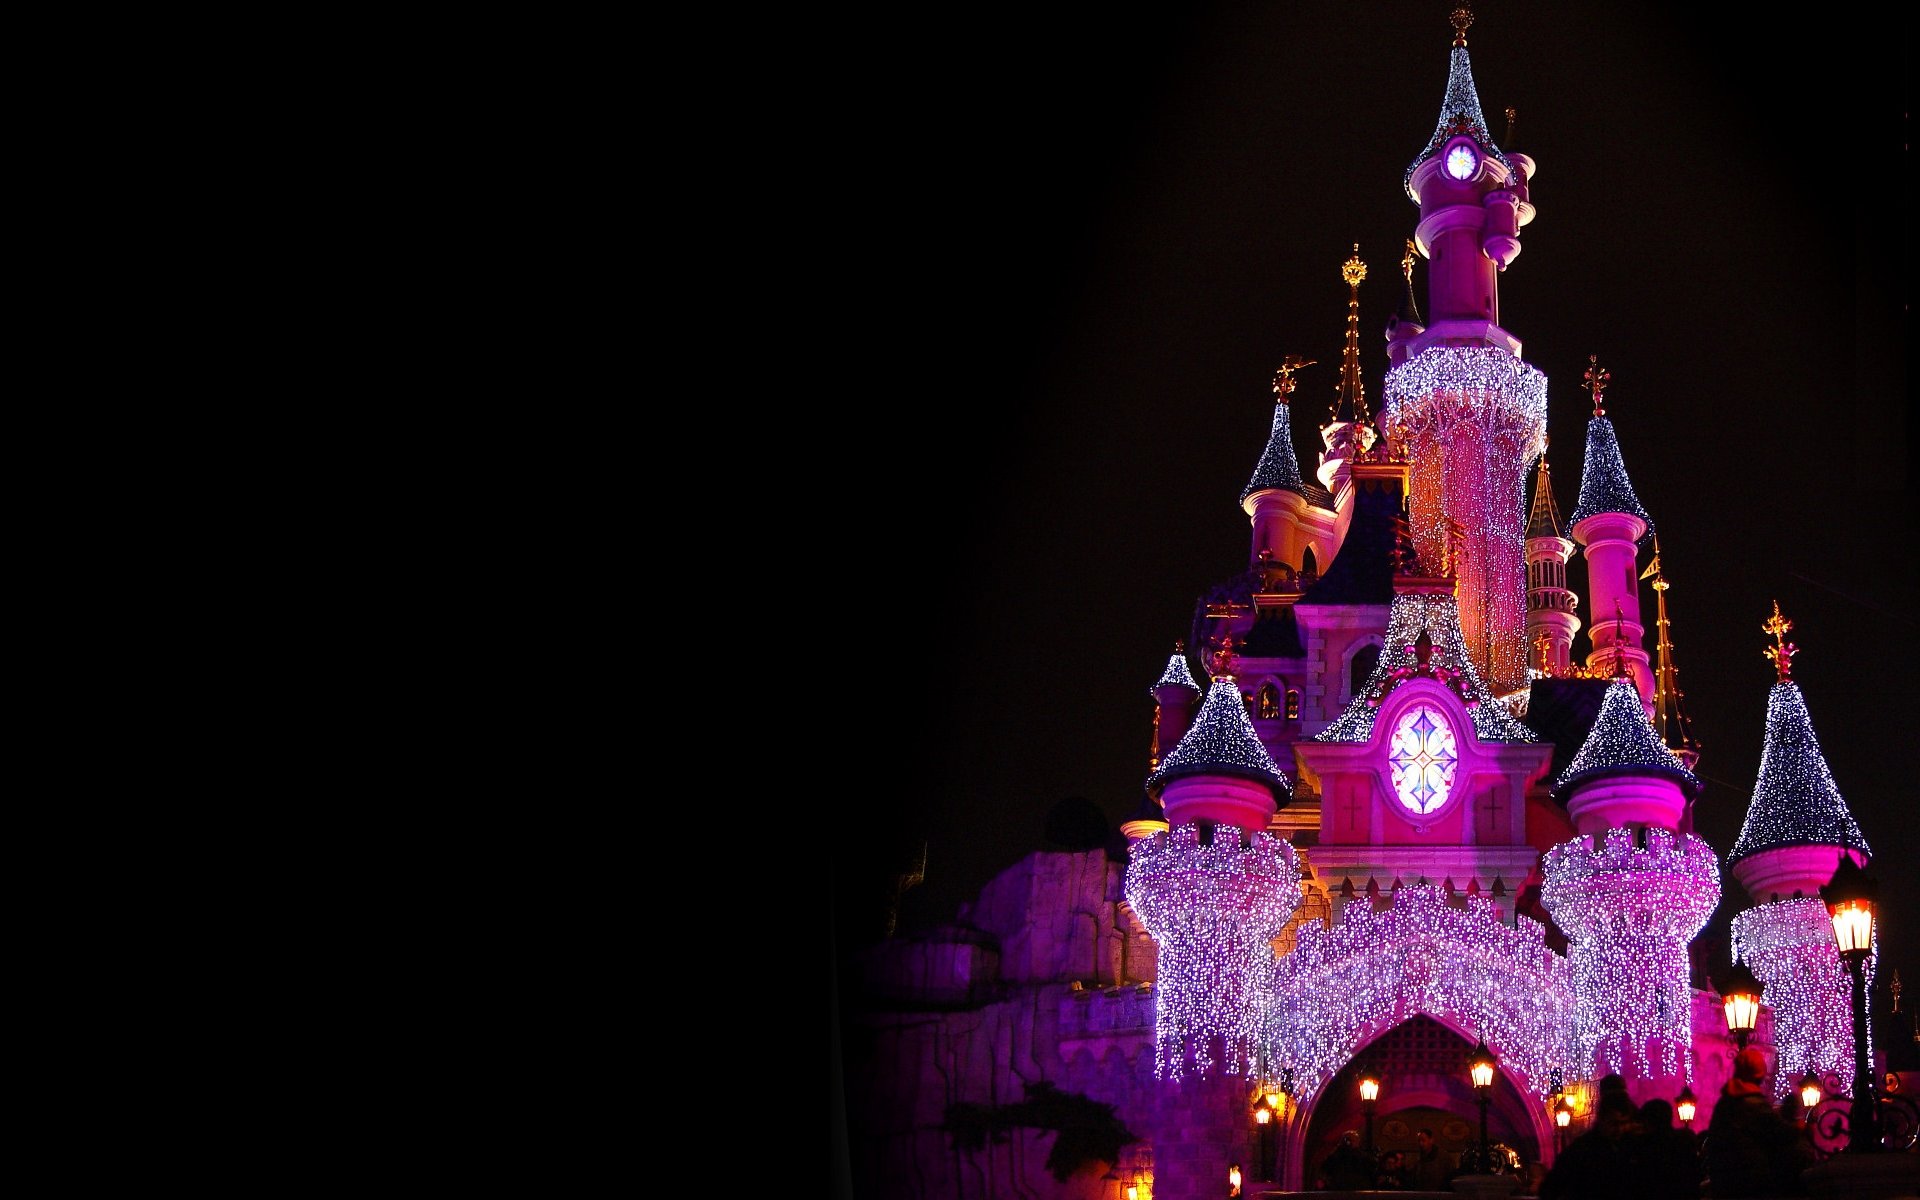 Disneyland HD Wallpaper: Truy cập vào bộ sưu tập ảnh nền Disneyland với độ phân giải cao nhất và đầy sắc màu của chúng tôi! Bạn sẽ không thể để tuột mất những bức hình nền tuyệt đẹp và tràn đầy sắc màu, giúp bạn thư giãn và tận hưởng không gian thần tiên của Disney!